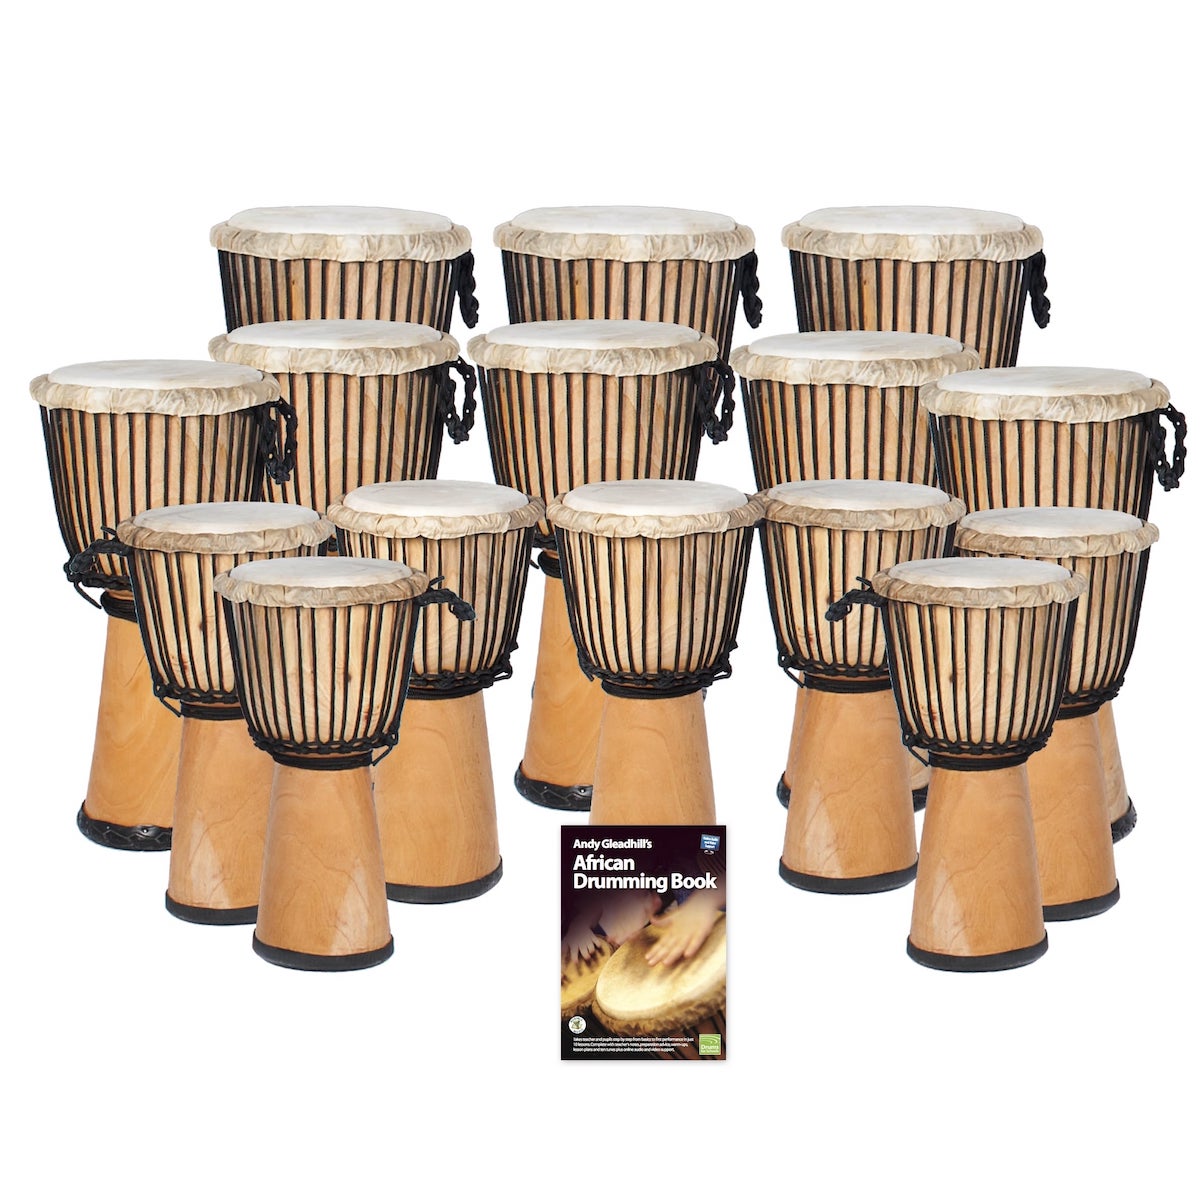 African Drumming 15 Djembe Drum Pack